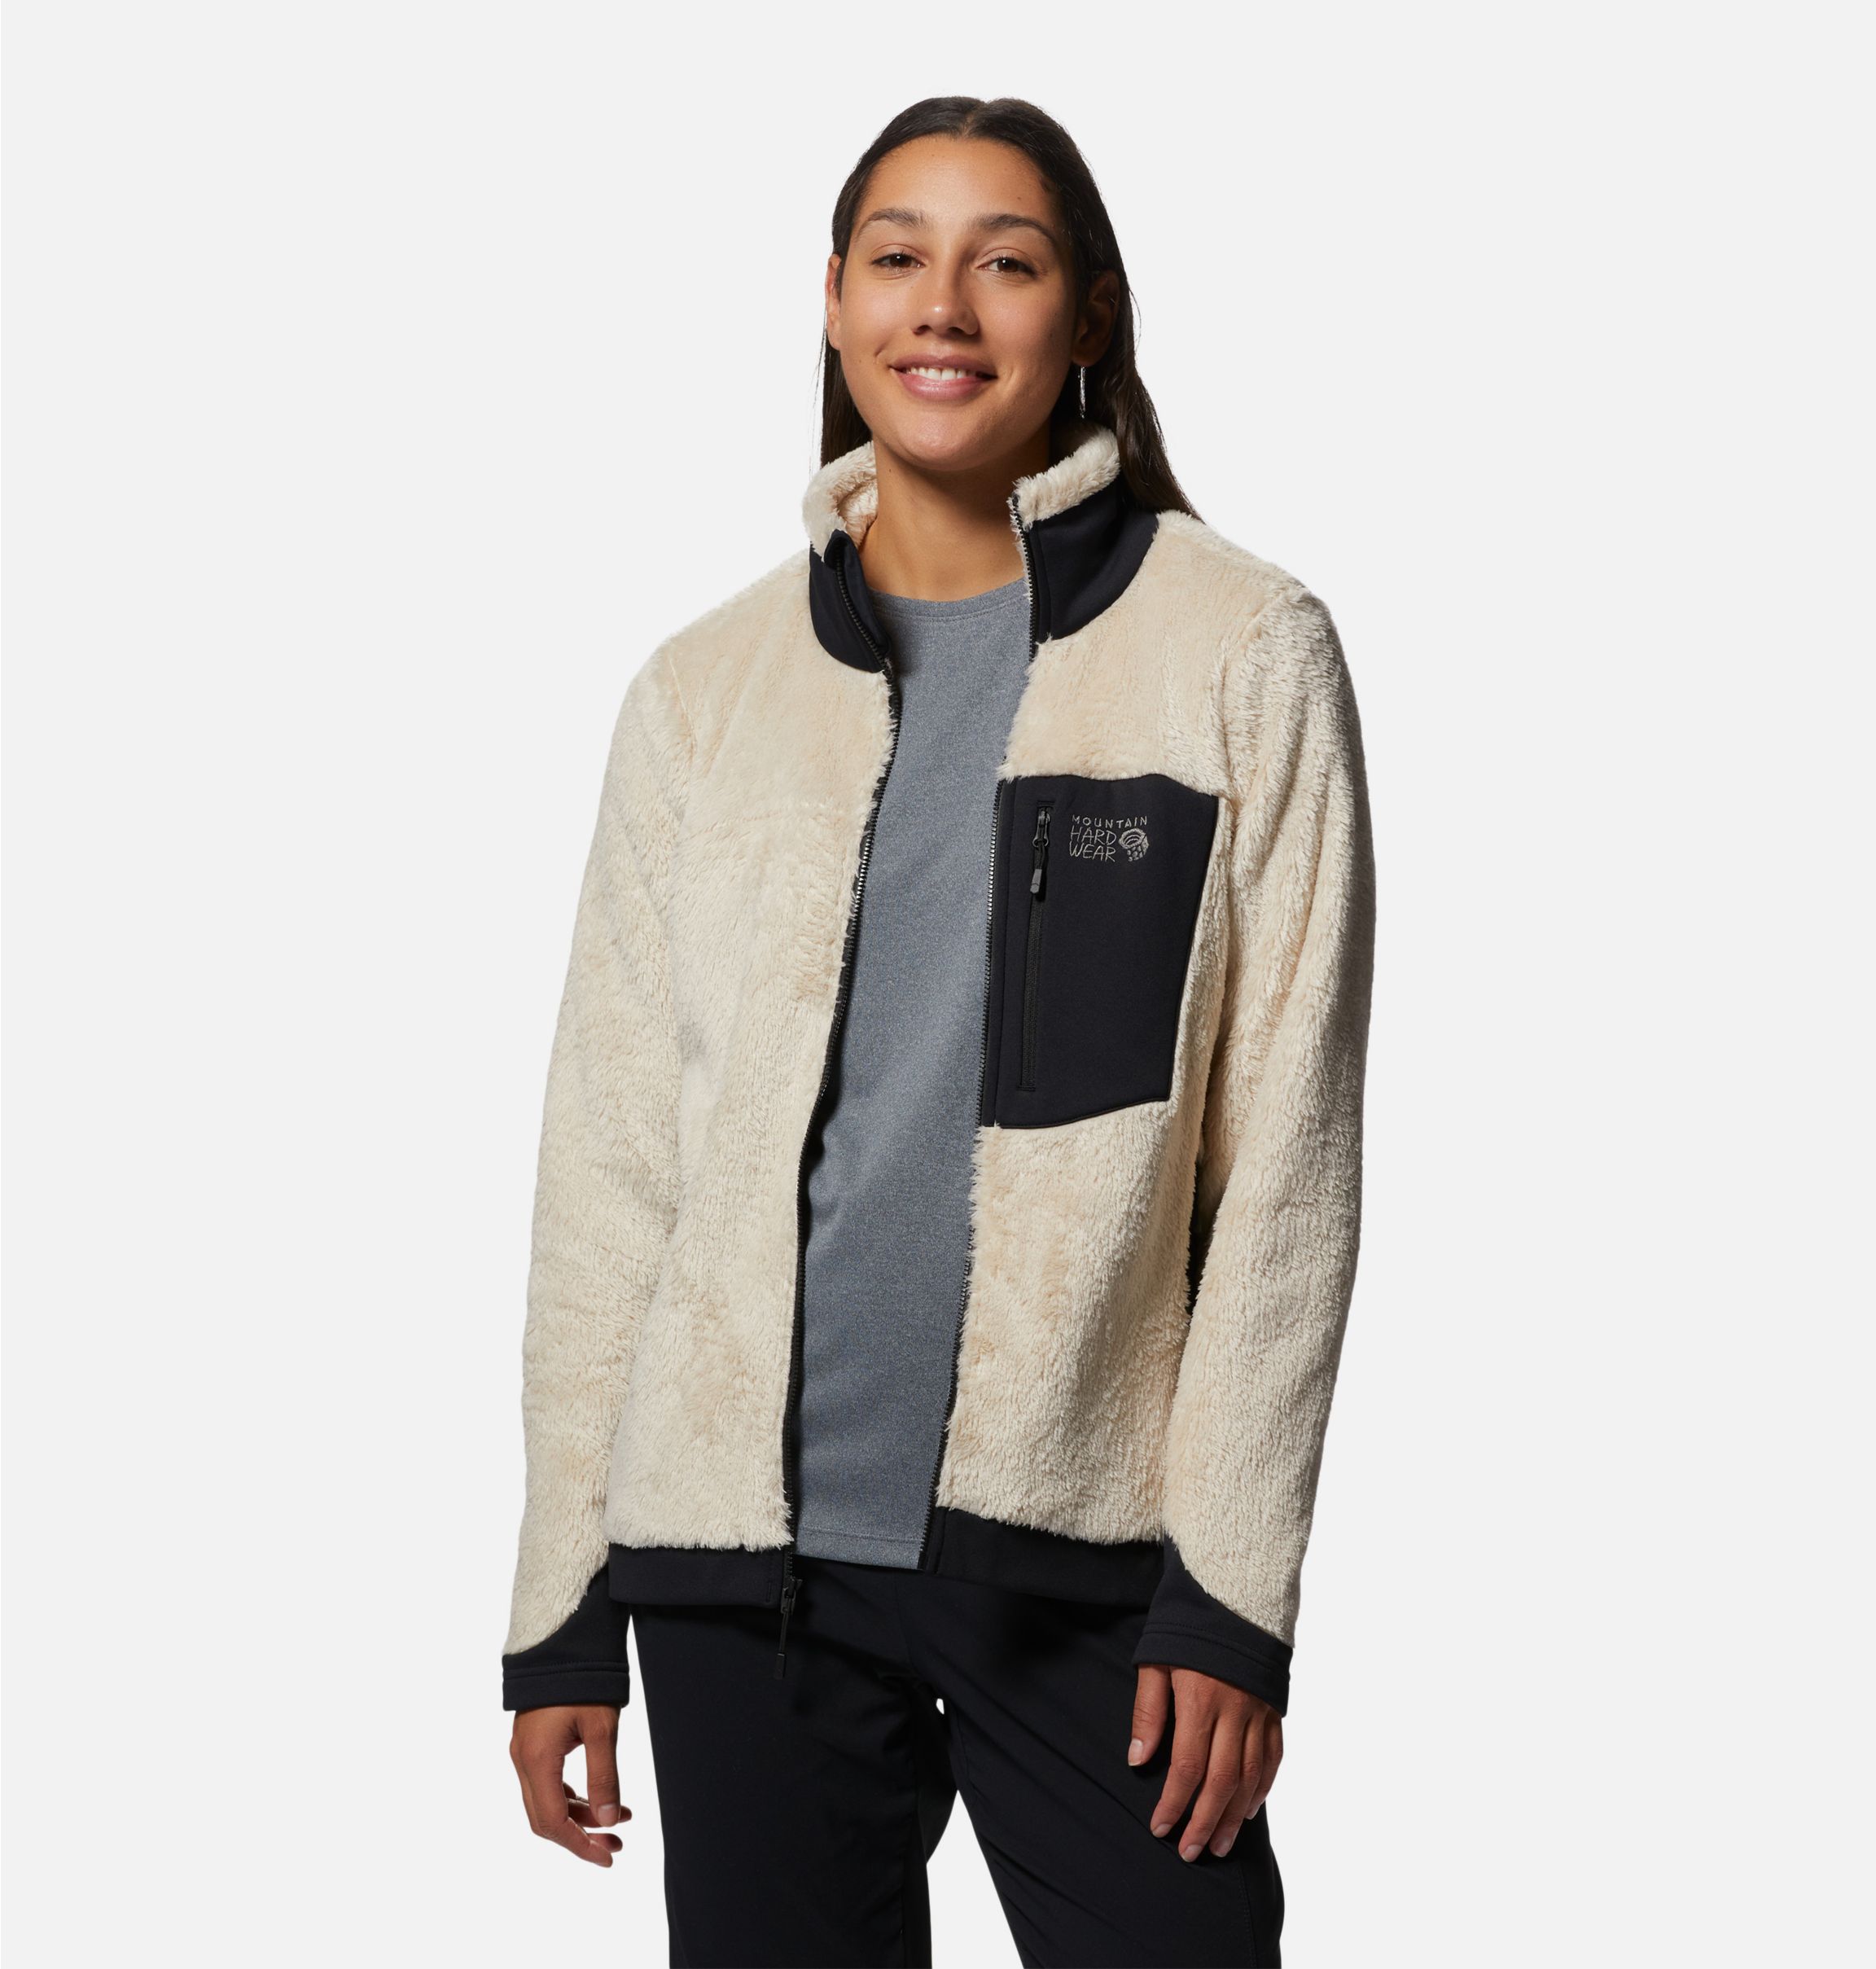 Women's Polartec® High Loft® Jacket